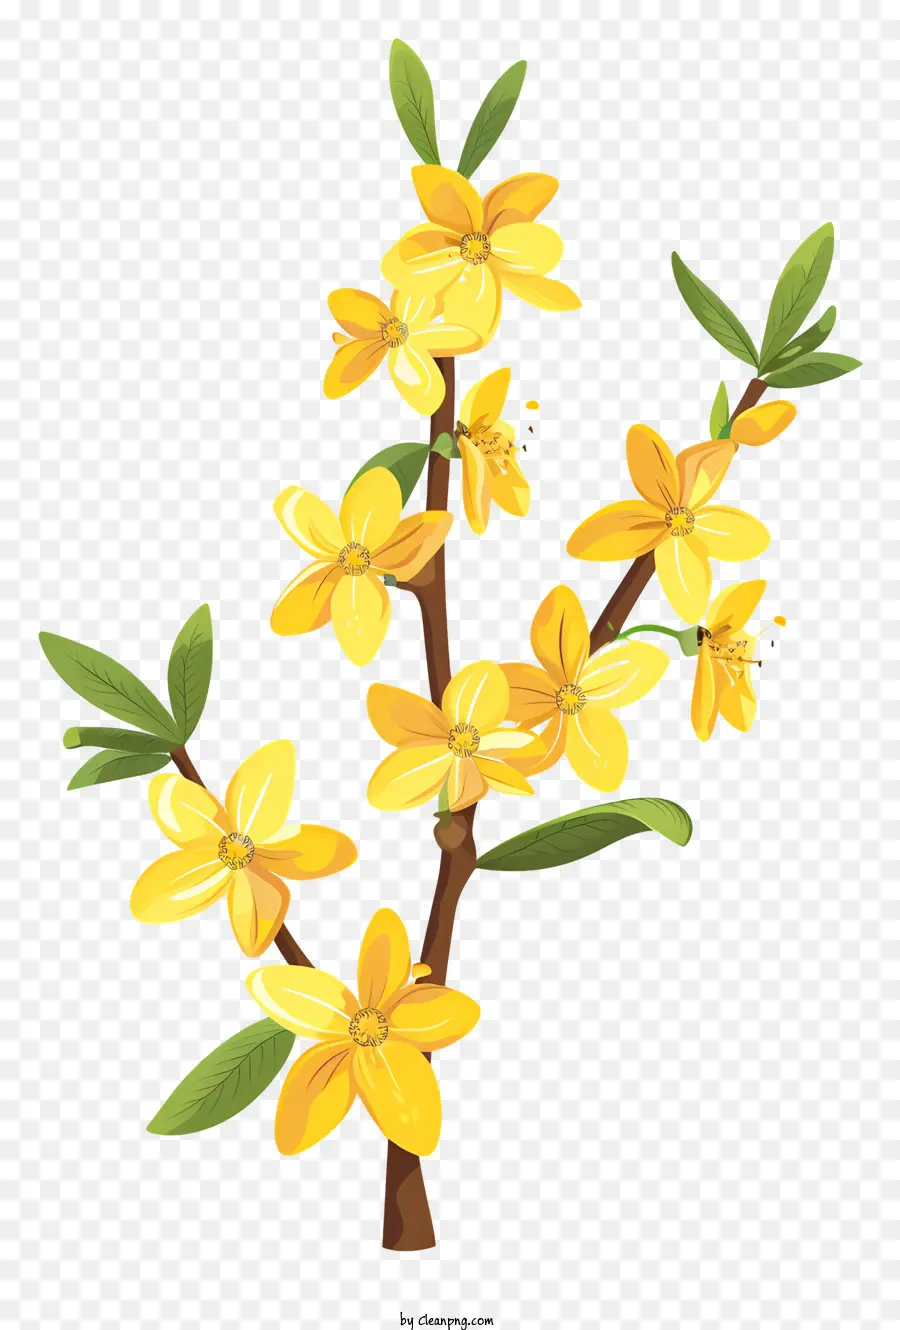 hoa mùa xuân - Hoa màu vàng trên cành, nền đen